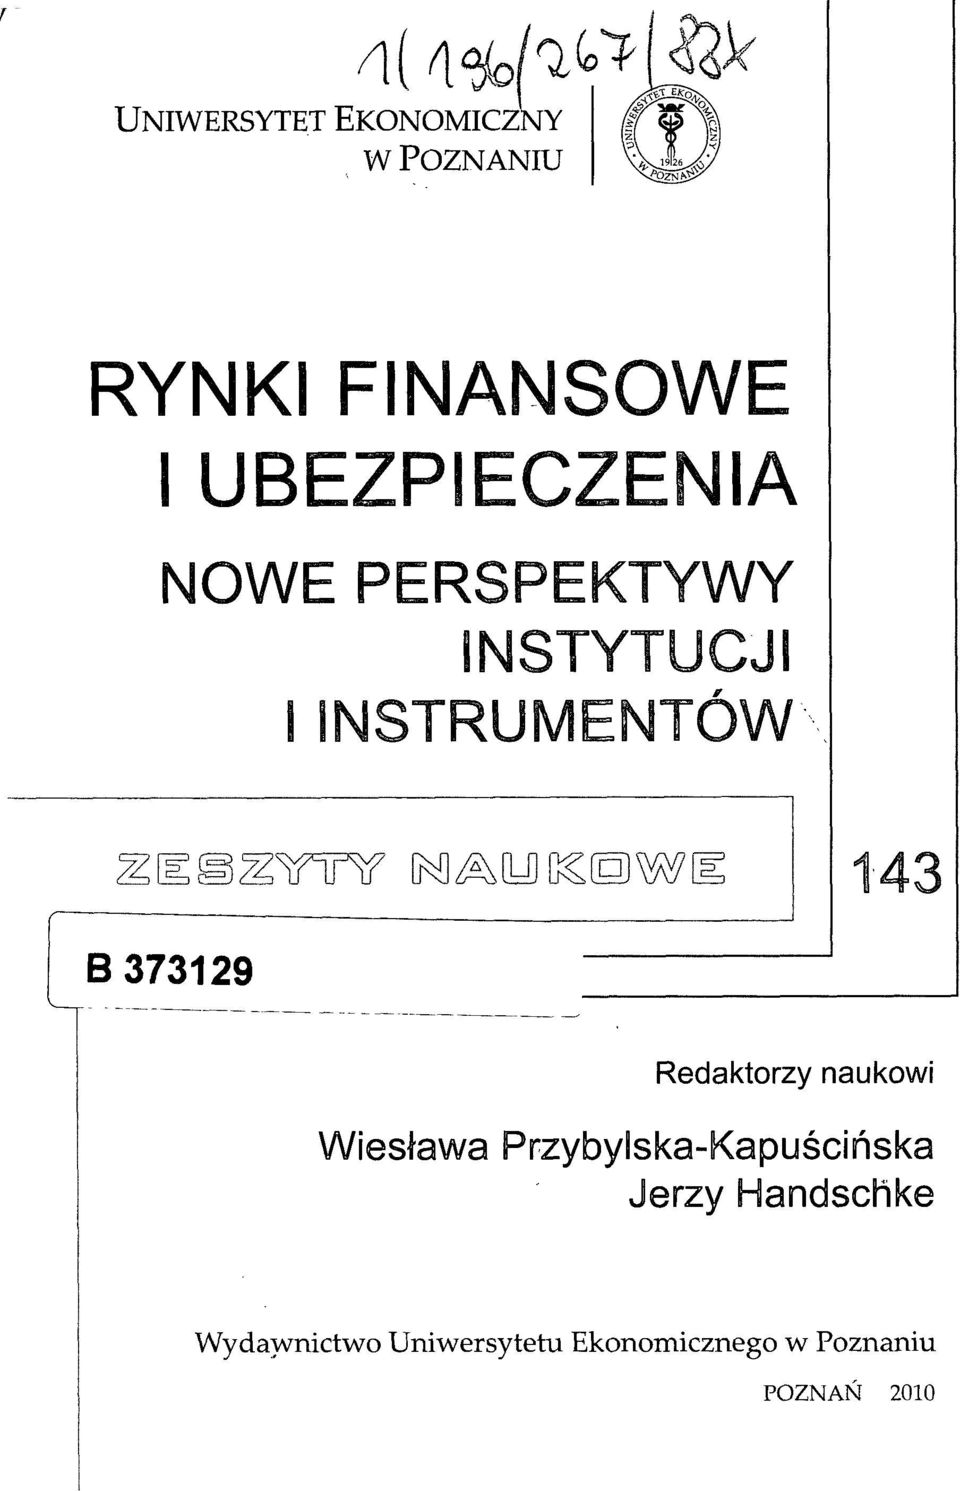 373129 Redaktorzy naukowi Wiesława Przybylska-Kapuścińska